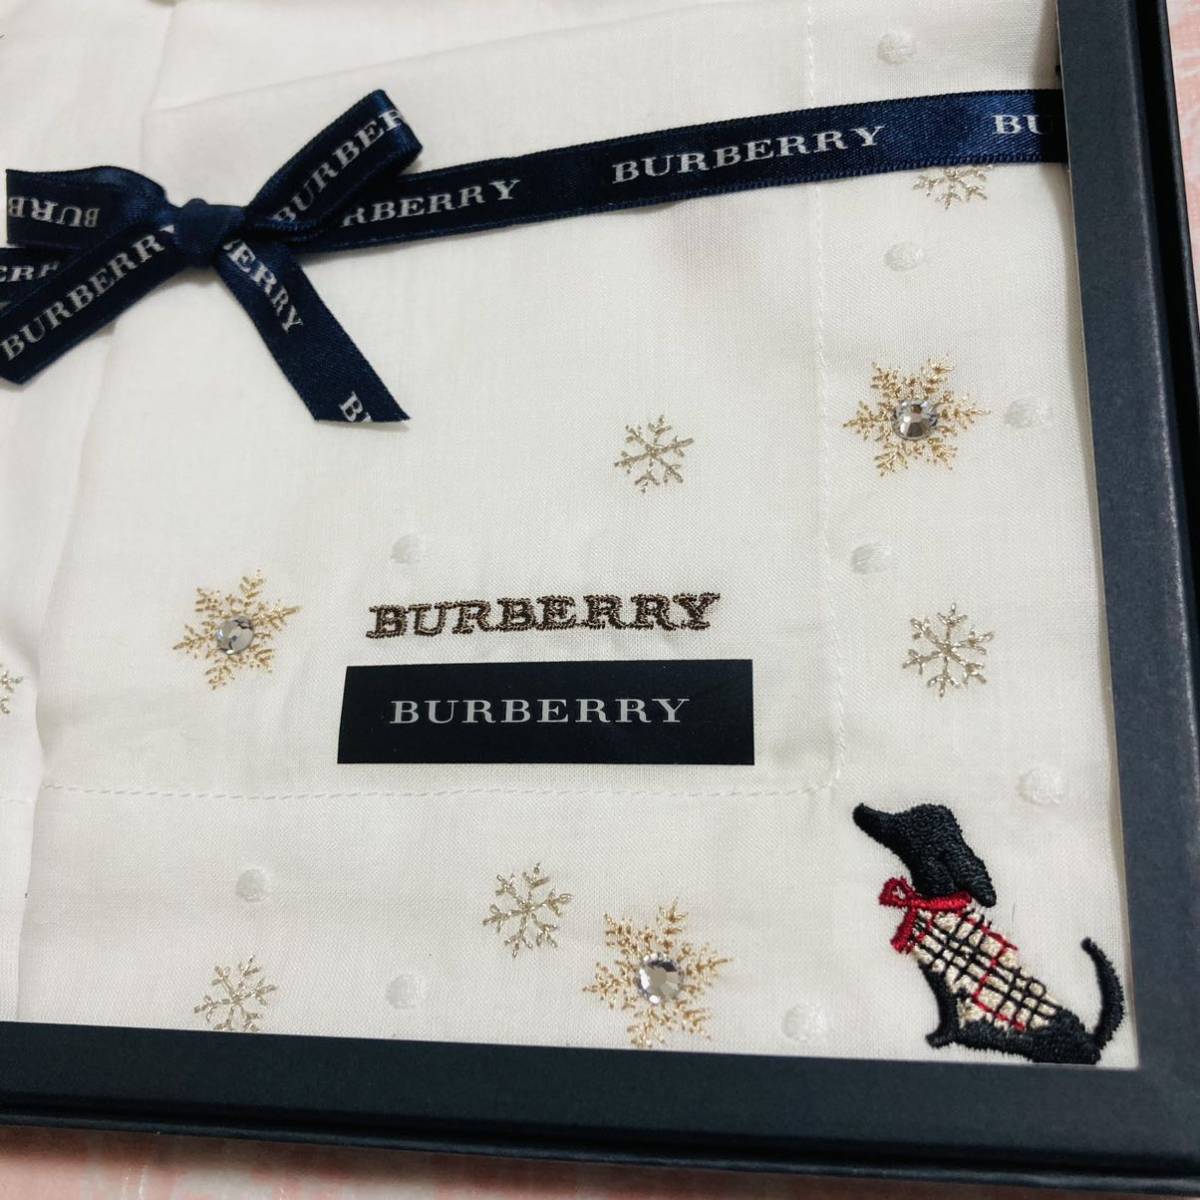 [ очень редкий ] новый товар /BURBERRY/ носовой платок / стандартный товар / не использовался / быстрое решение есть / анонимность отправка / Burberry / снег / женщина / большой размер / женский / кристалл / подарок / собака / белый / подарок 